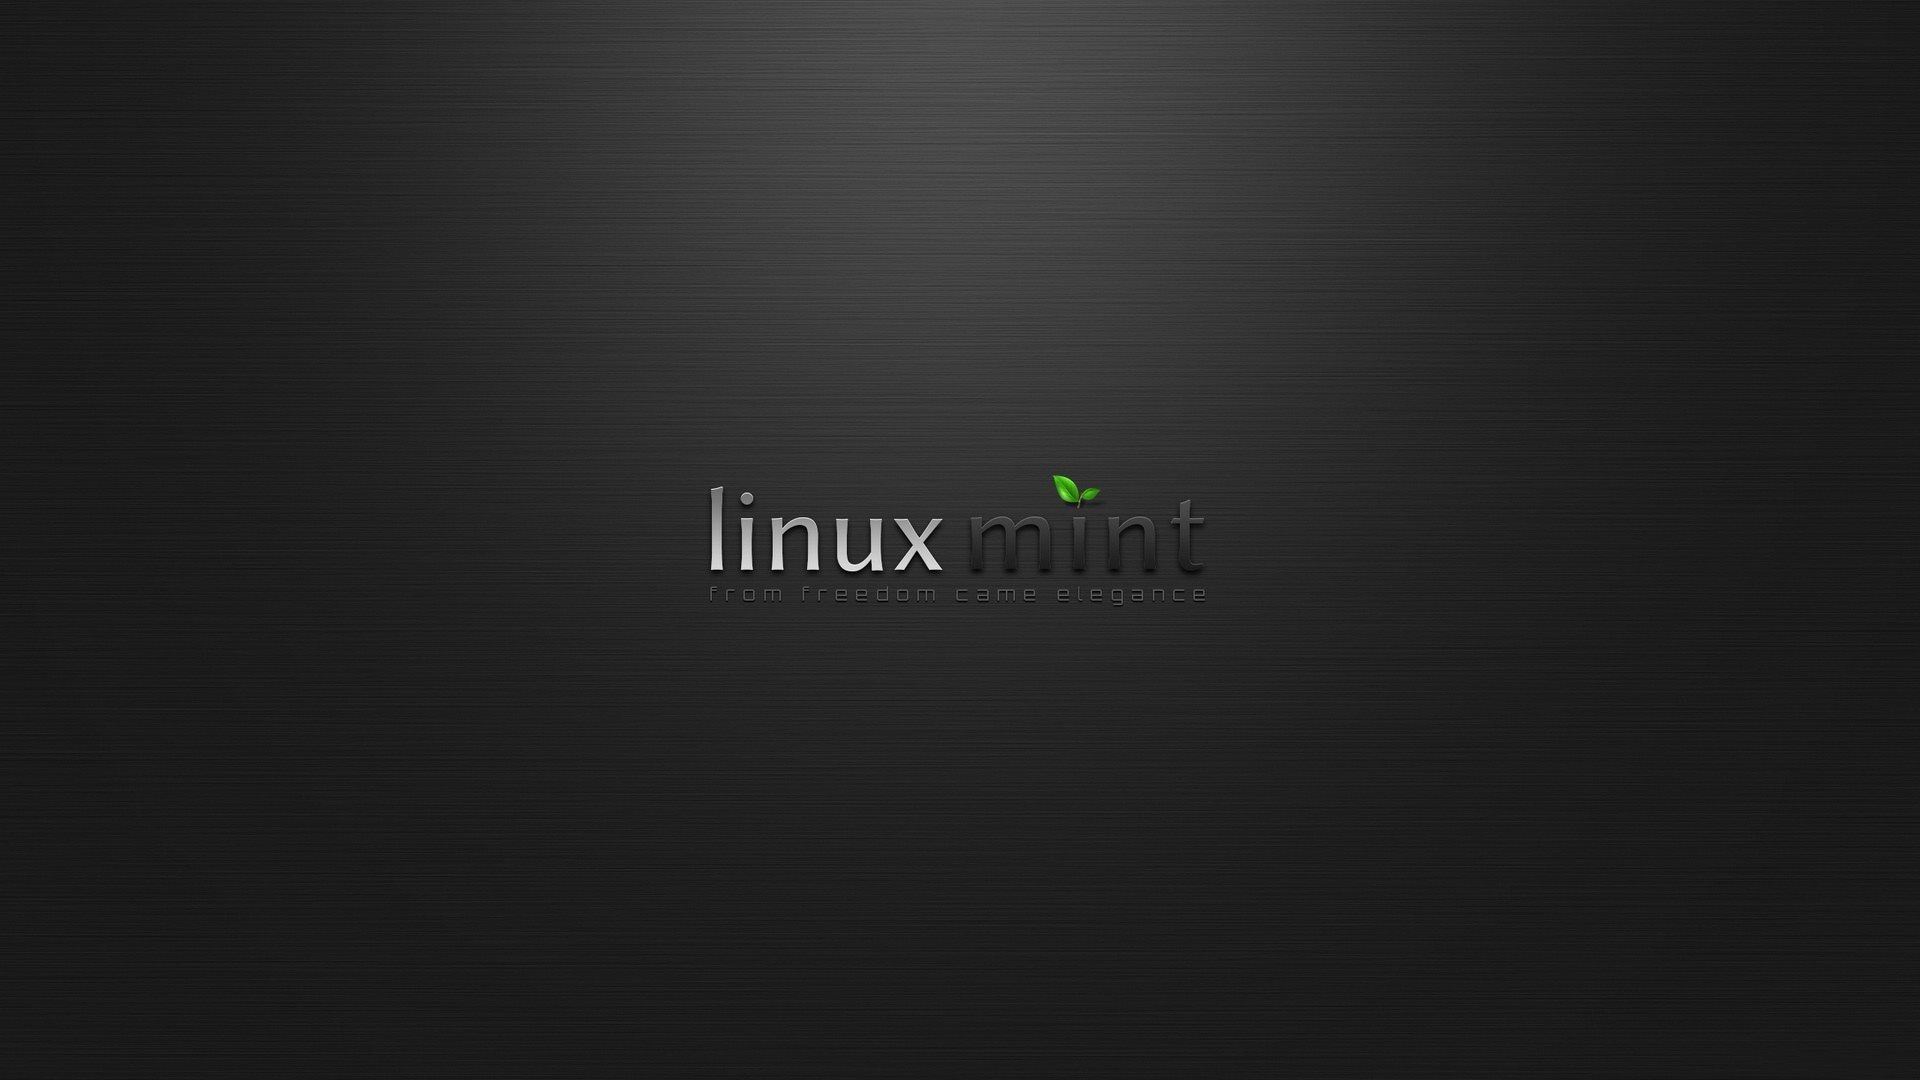 ダウンロード画像 背景 ミント ロゴ Linux 分布 経営システム 画面の解像度 19x1080 壁紙デスクトップ上